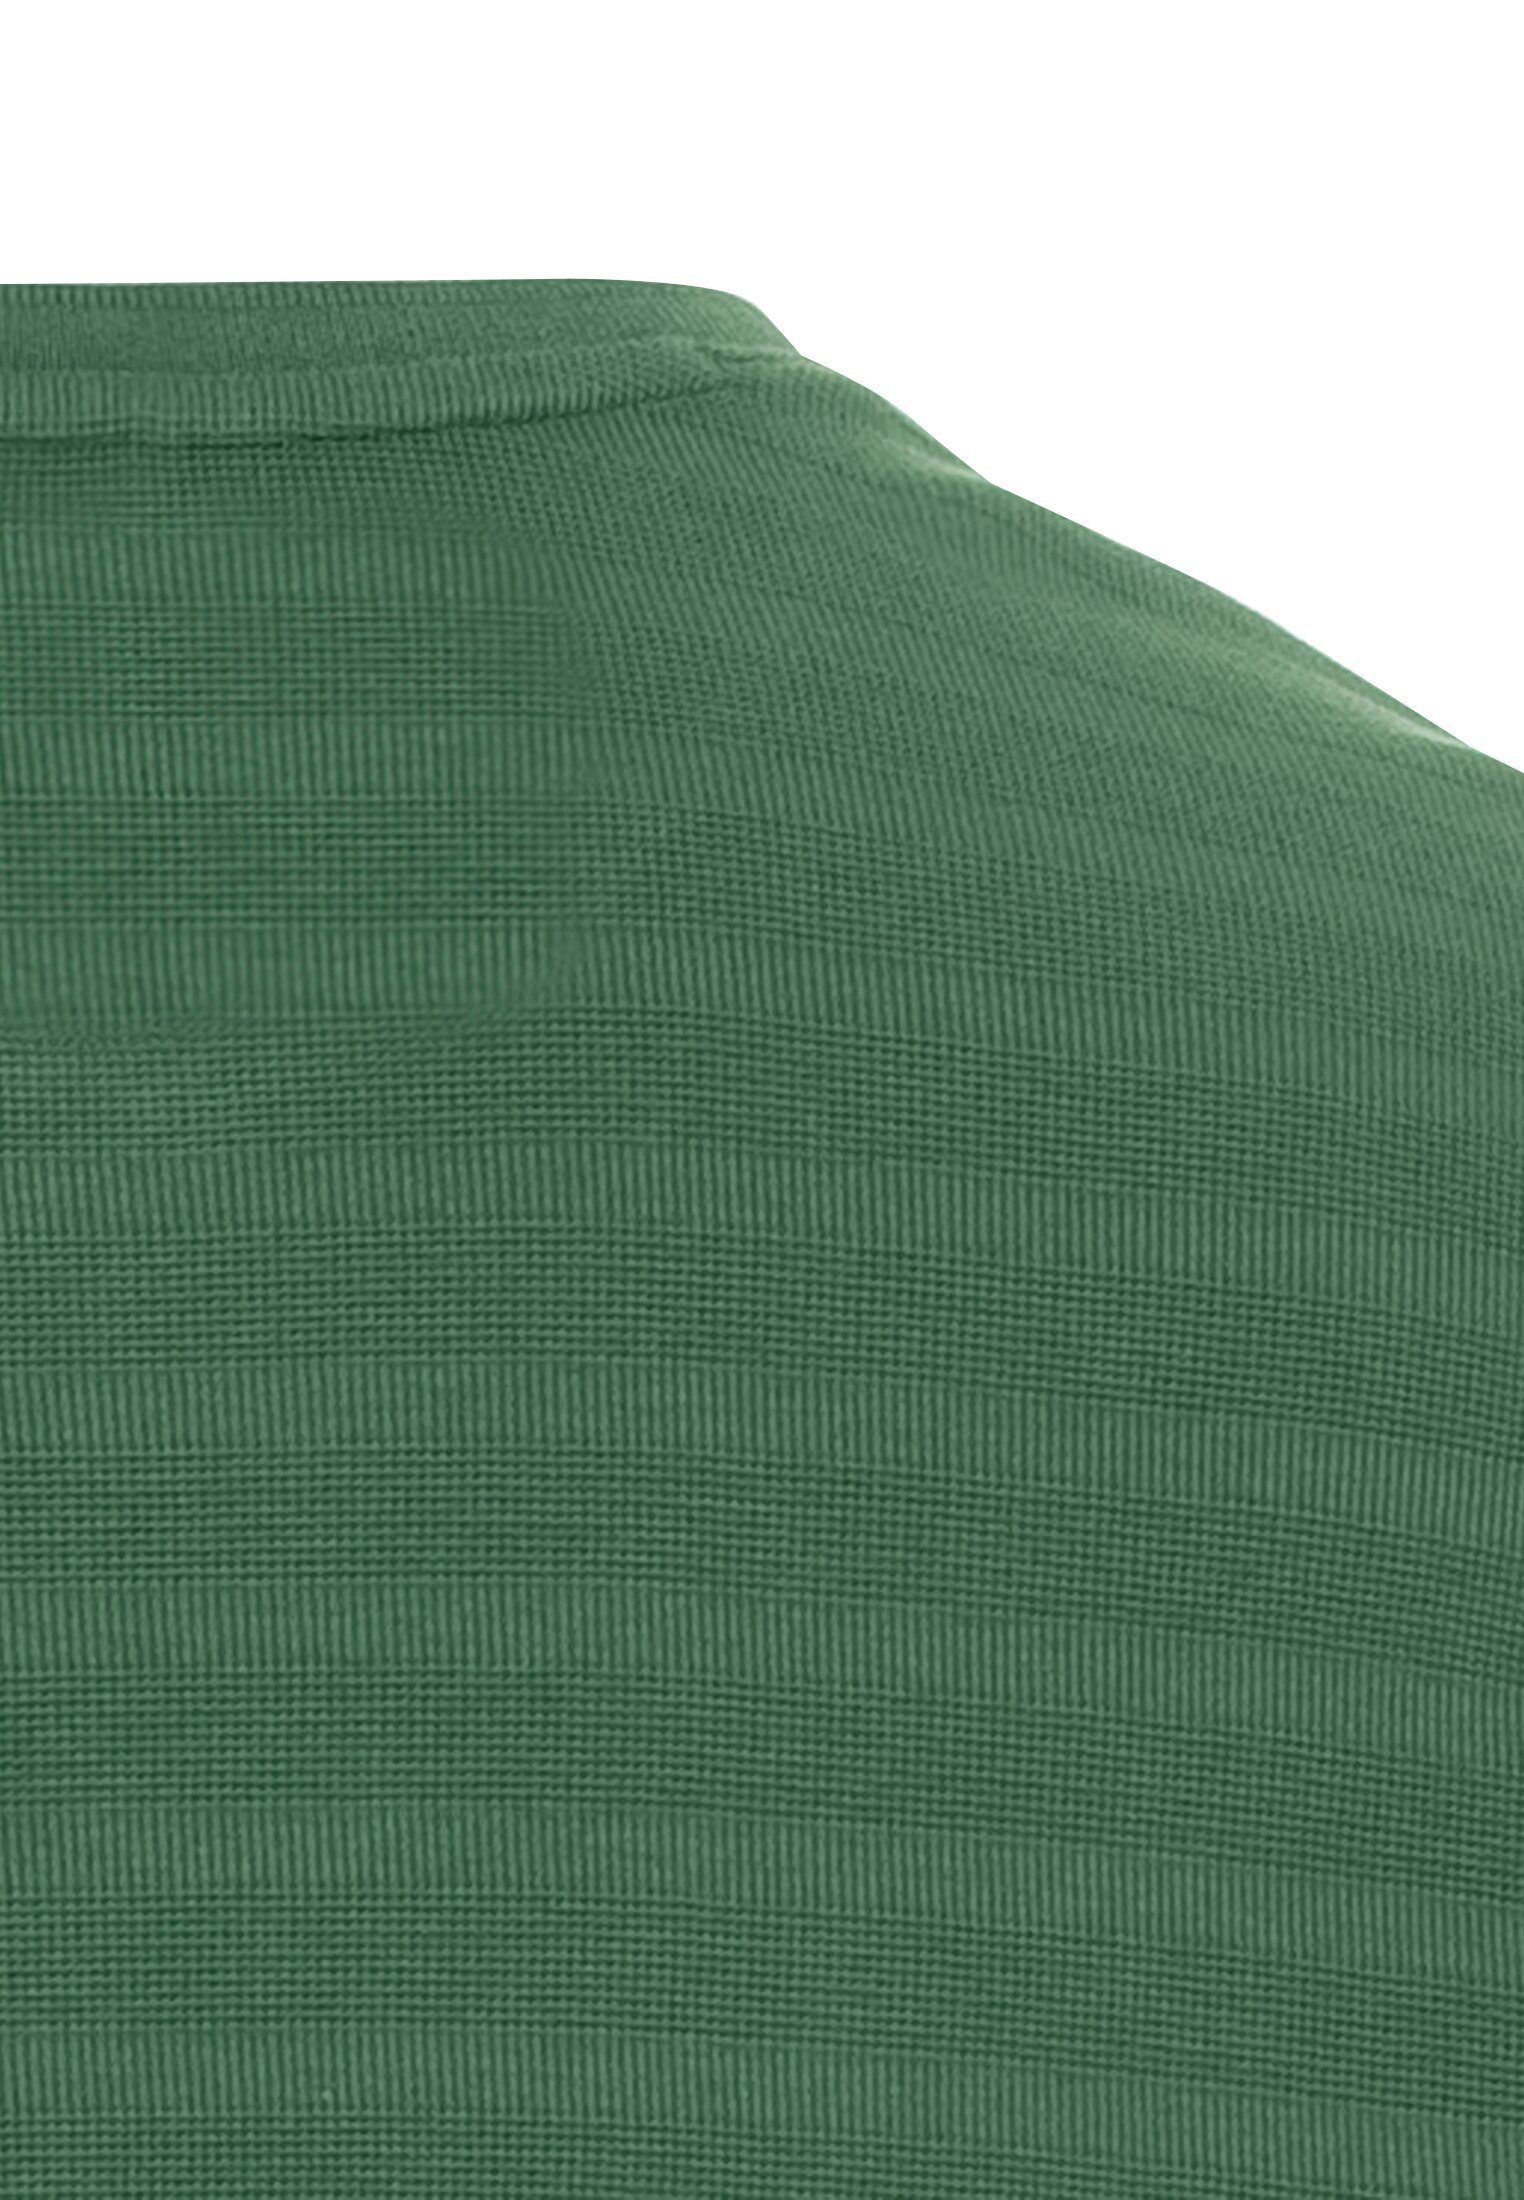 camel active Henleyshirt aus reiner Grün Baumwolle